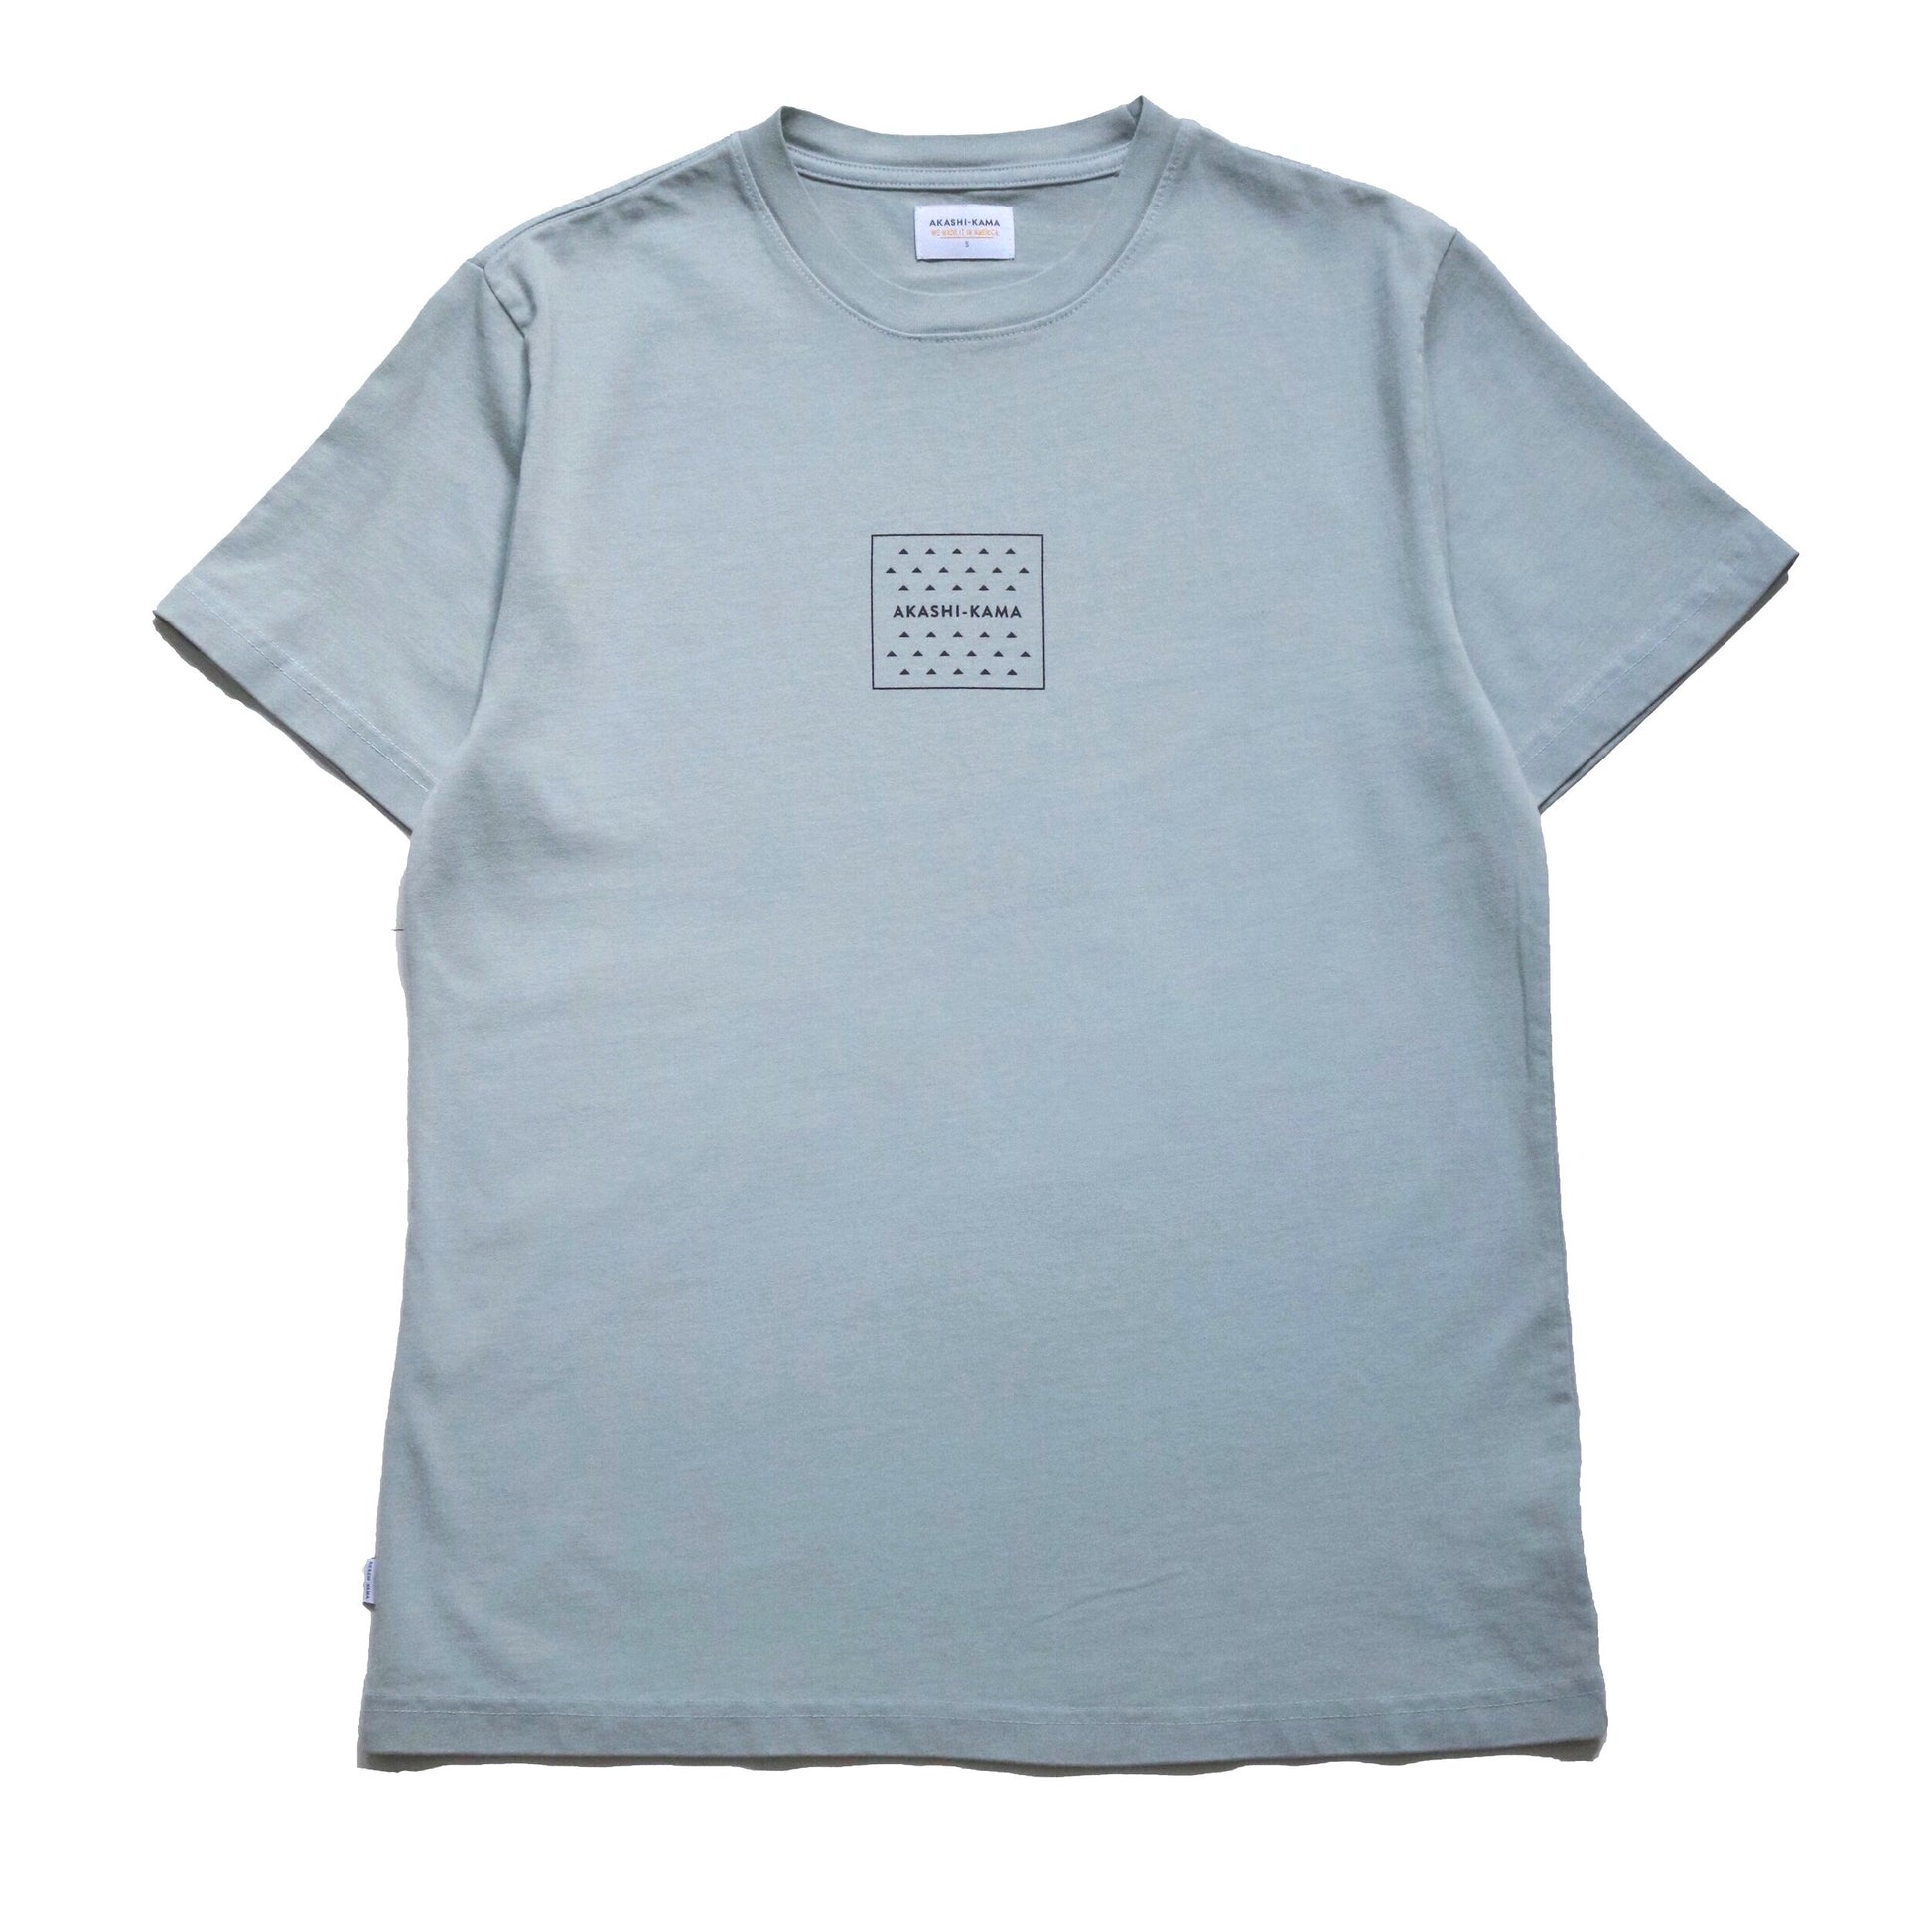 Akashi Kama Shirt Garment Dye Streetwear Heavyweight Tee Yama